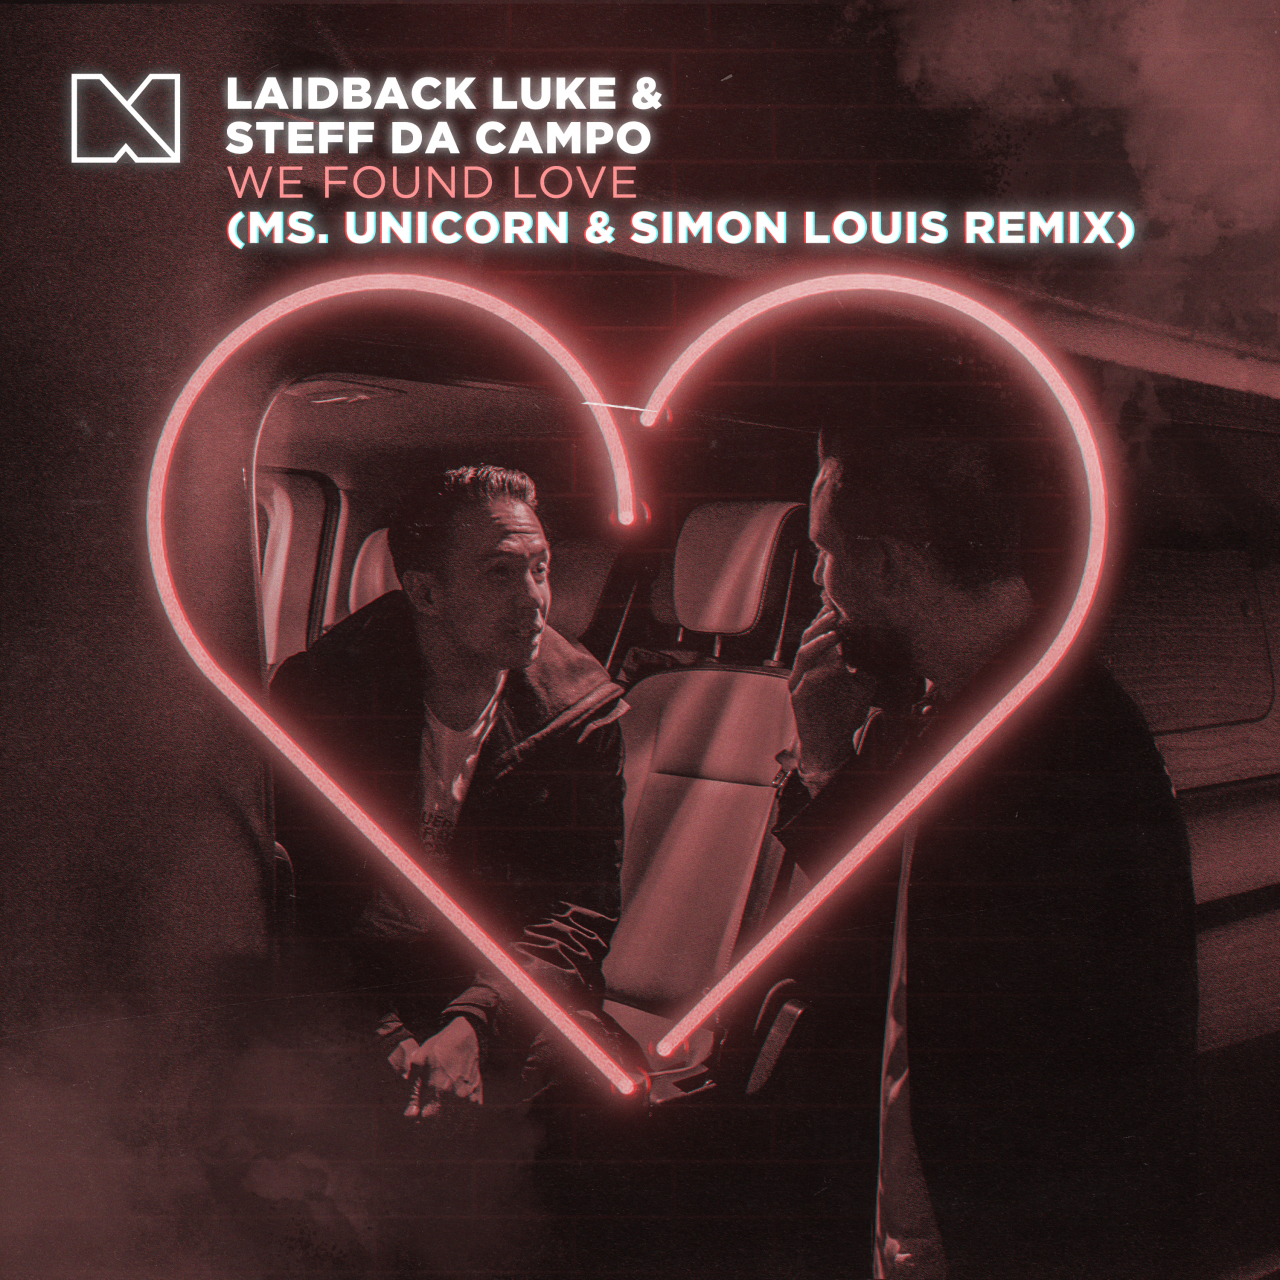 We Found Love (Ms. Unicorn & Simon Louis Remix)